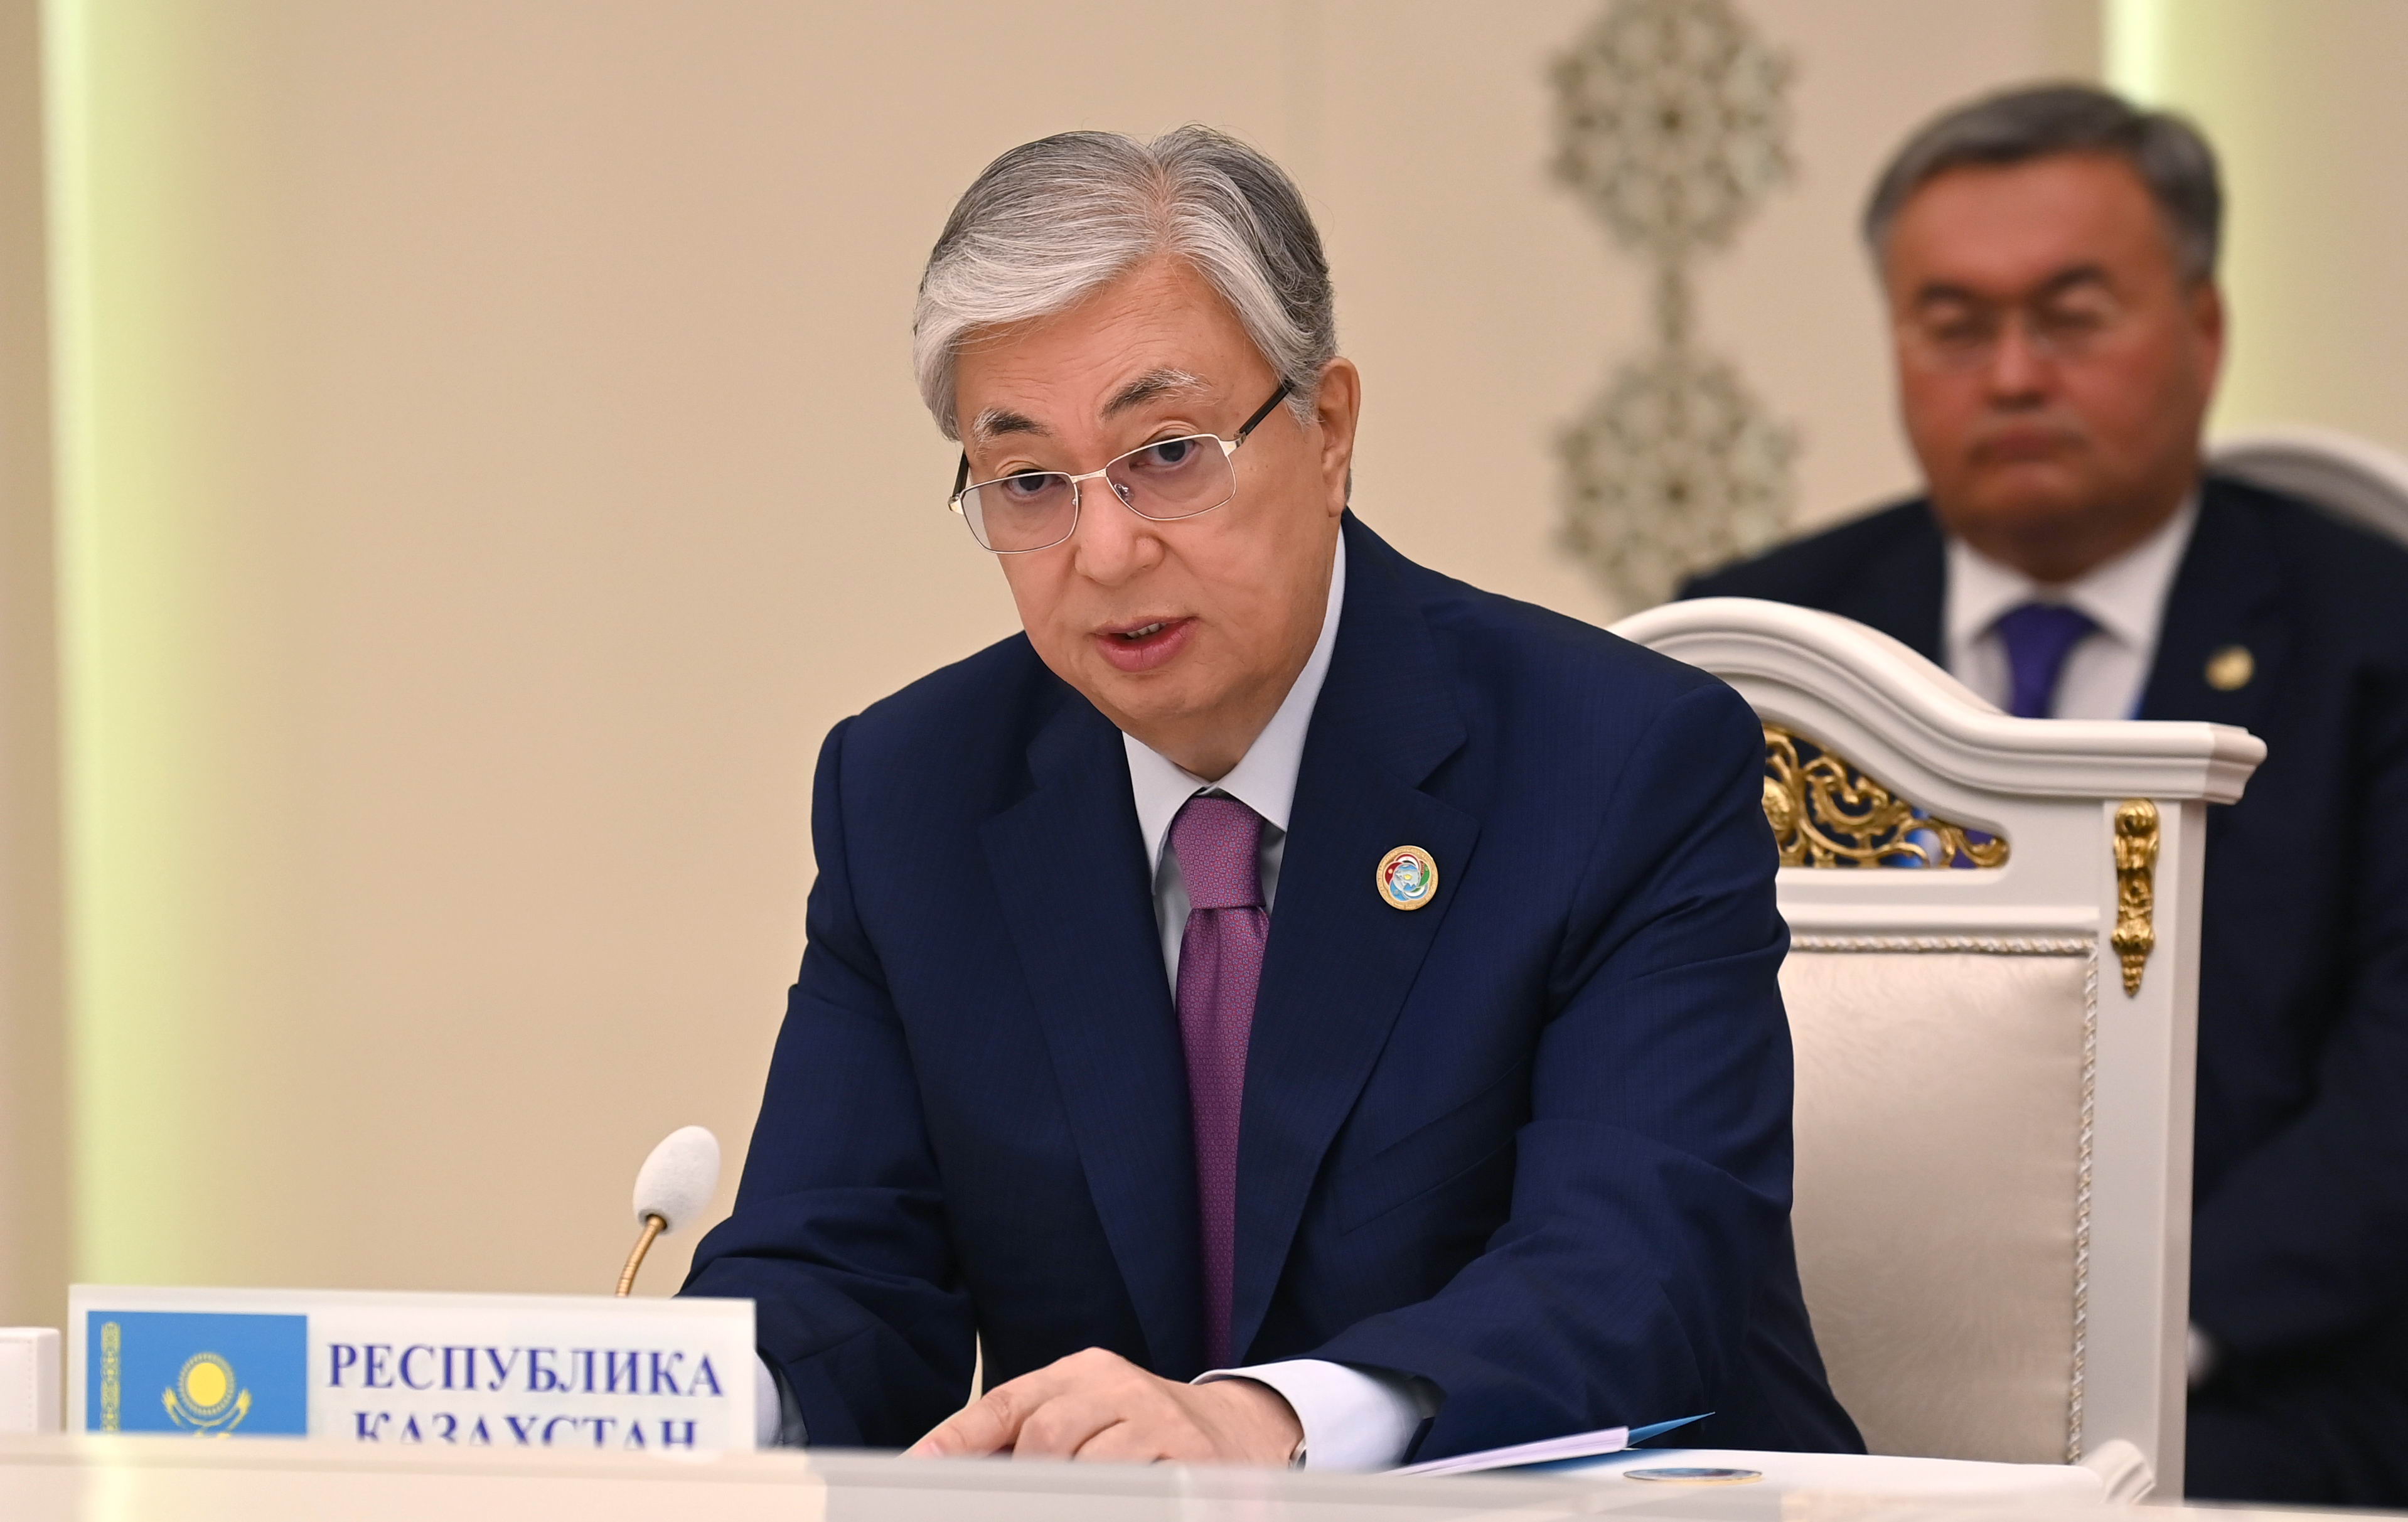 ҚР Президенті Орталық Азияда тауар өткізудің бірыңғай желісін құруды ұсынды